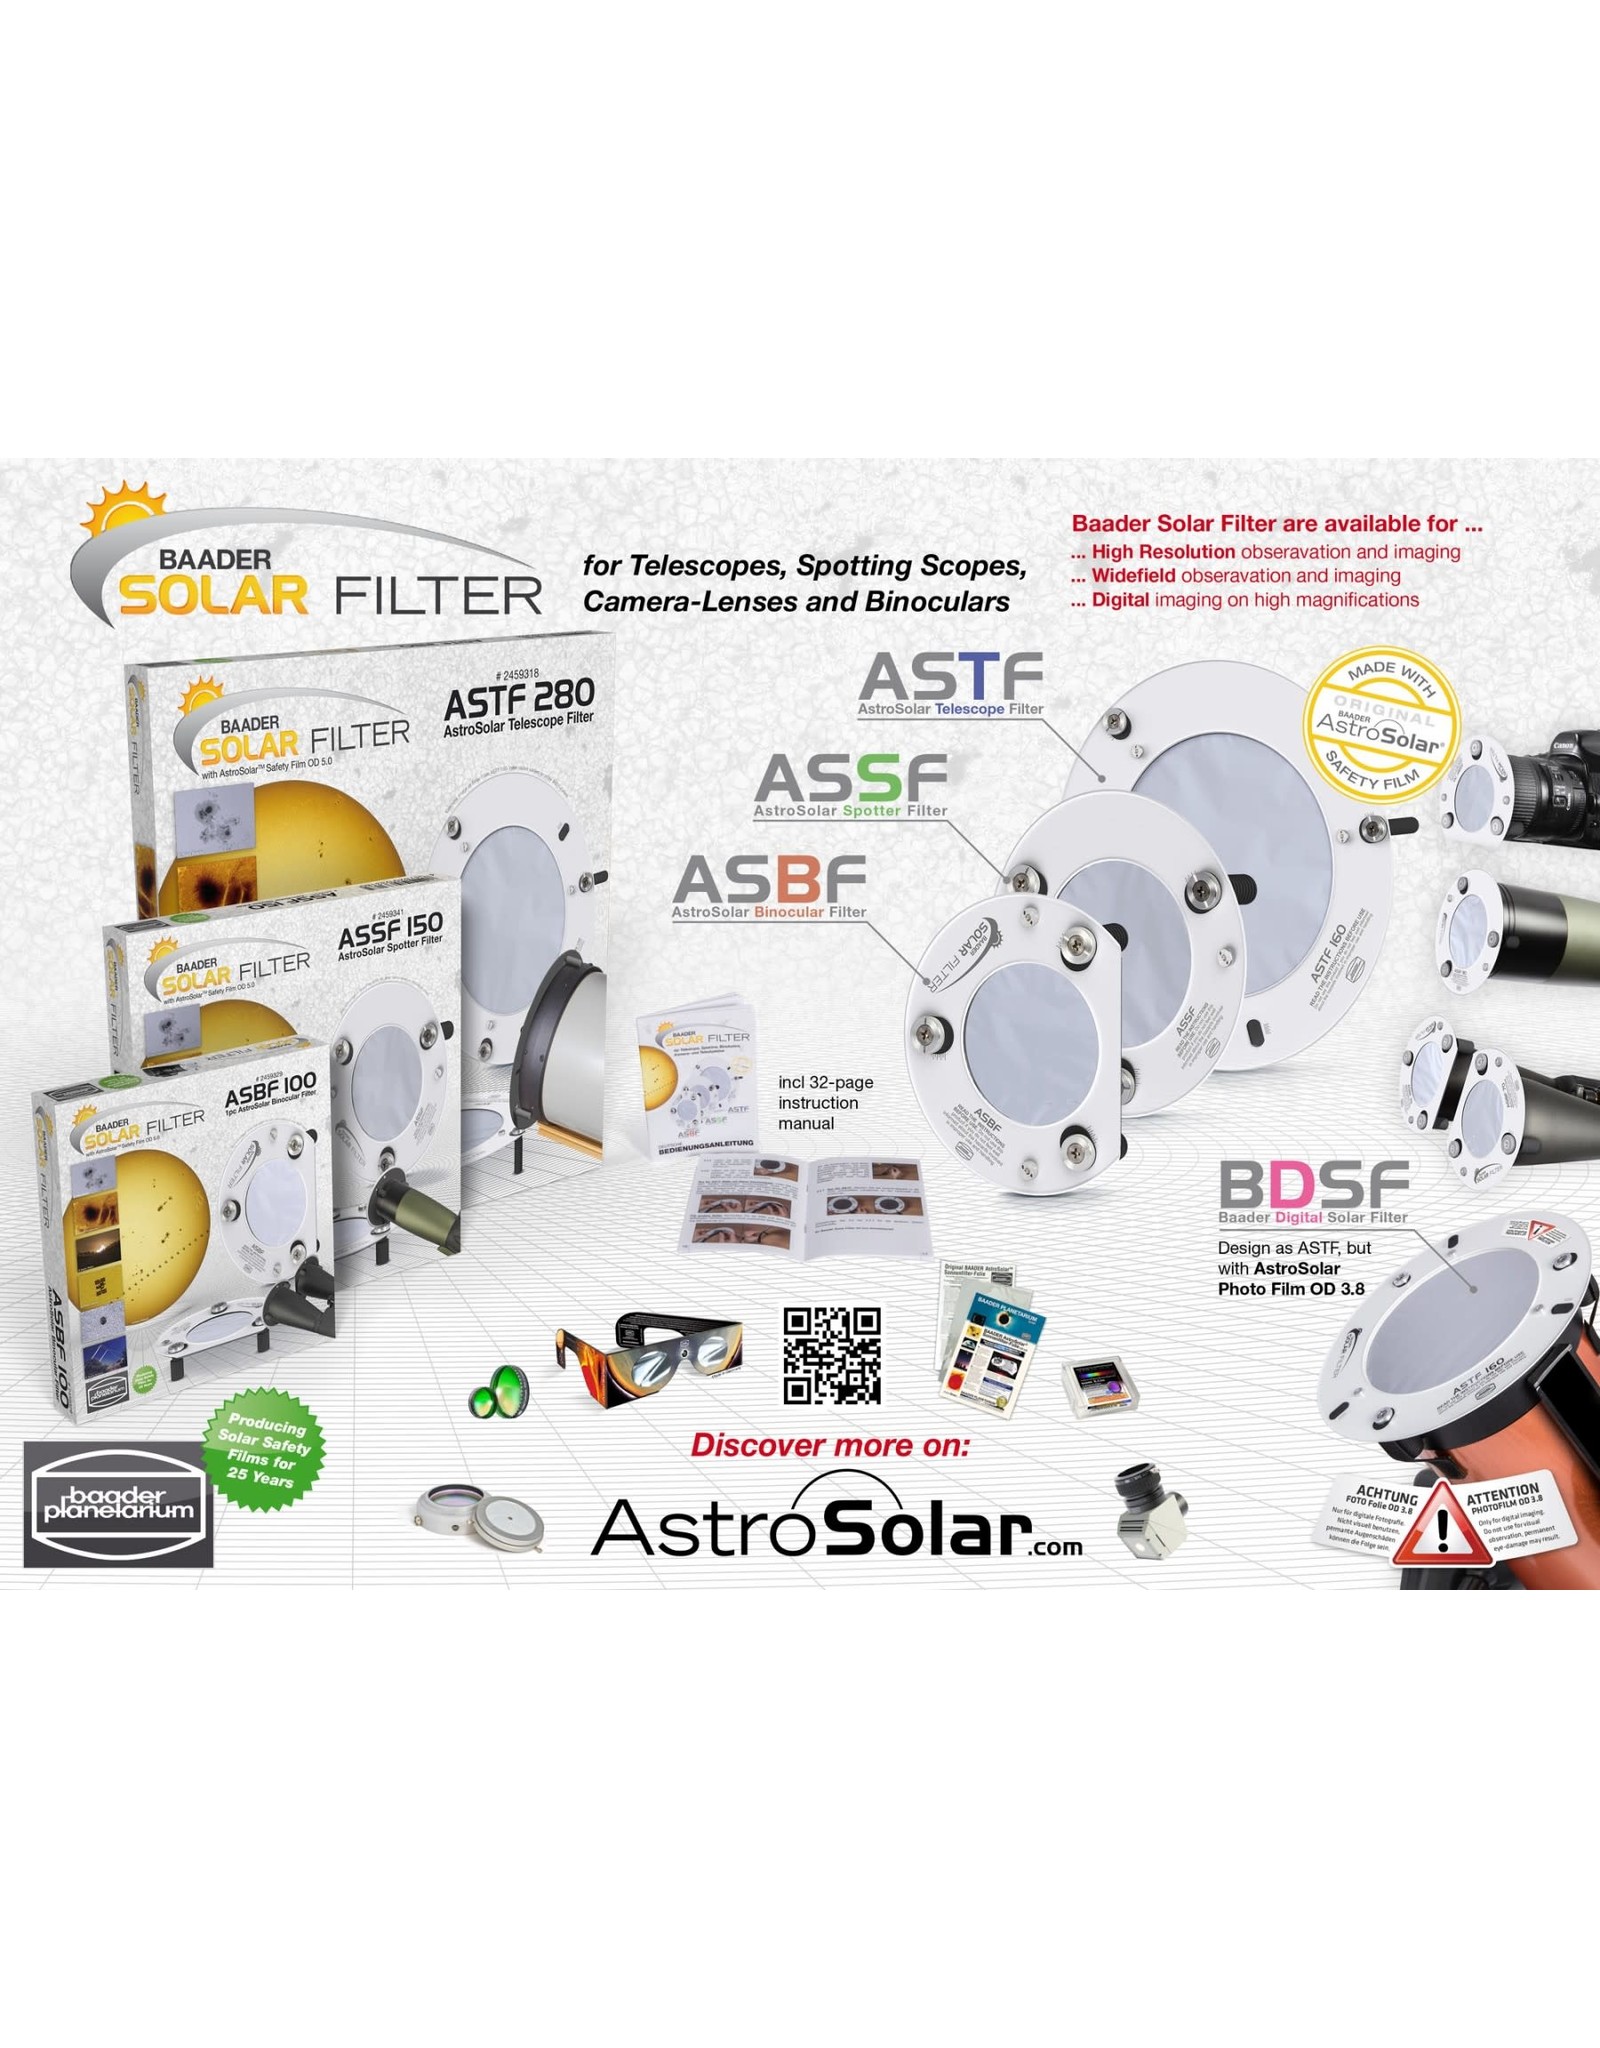 Baader Planetarium Baader BDSF: OD 3.8 Baader Digital Solar Filter (Specify Size)